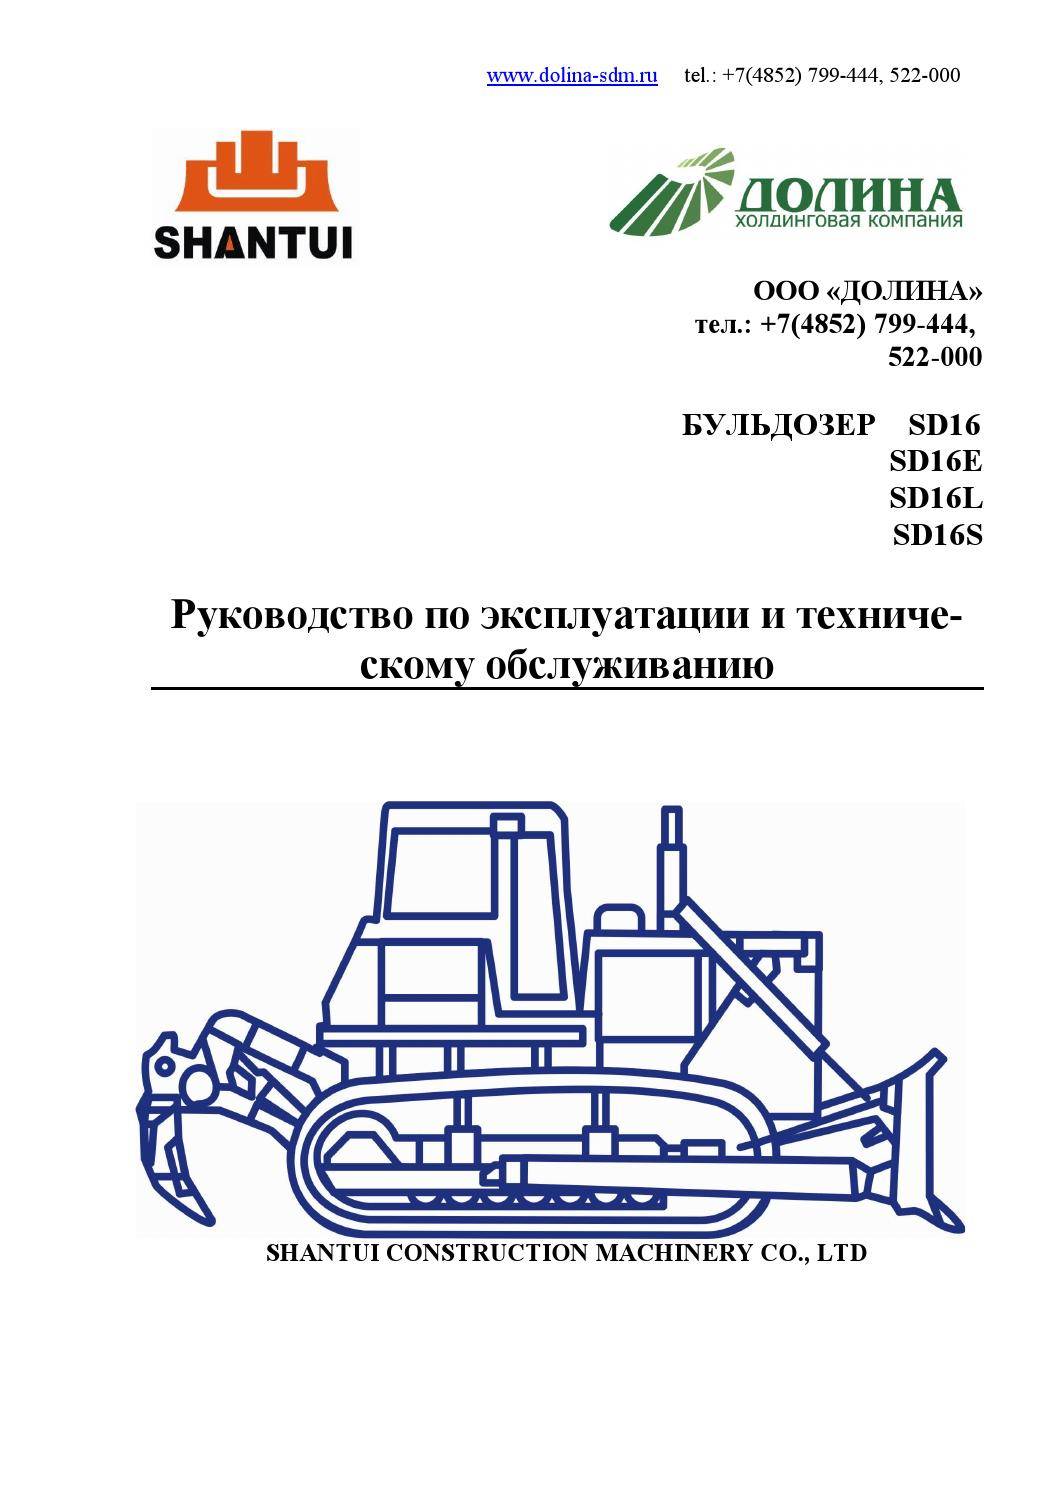 Инструкция по эксплуатации бульдозера т-130 - руководства, инструкции, бланки